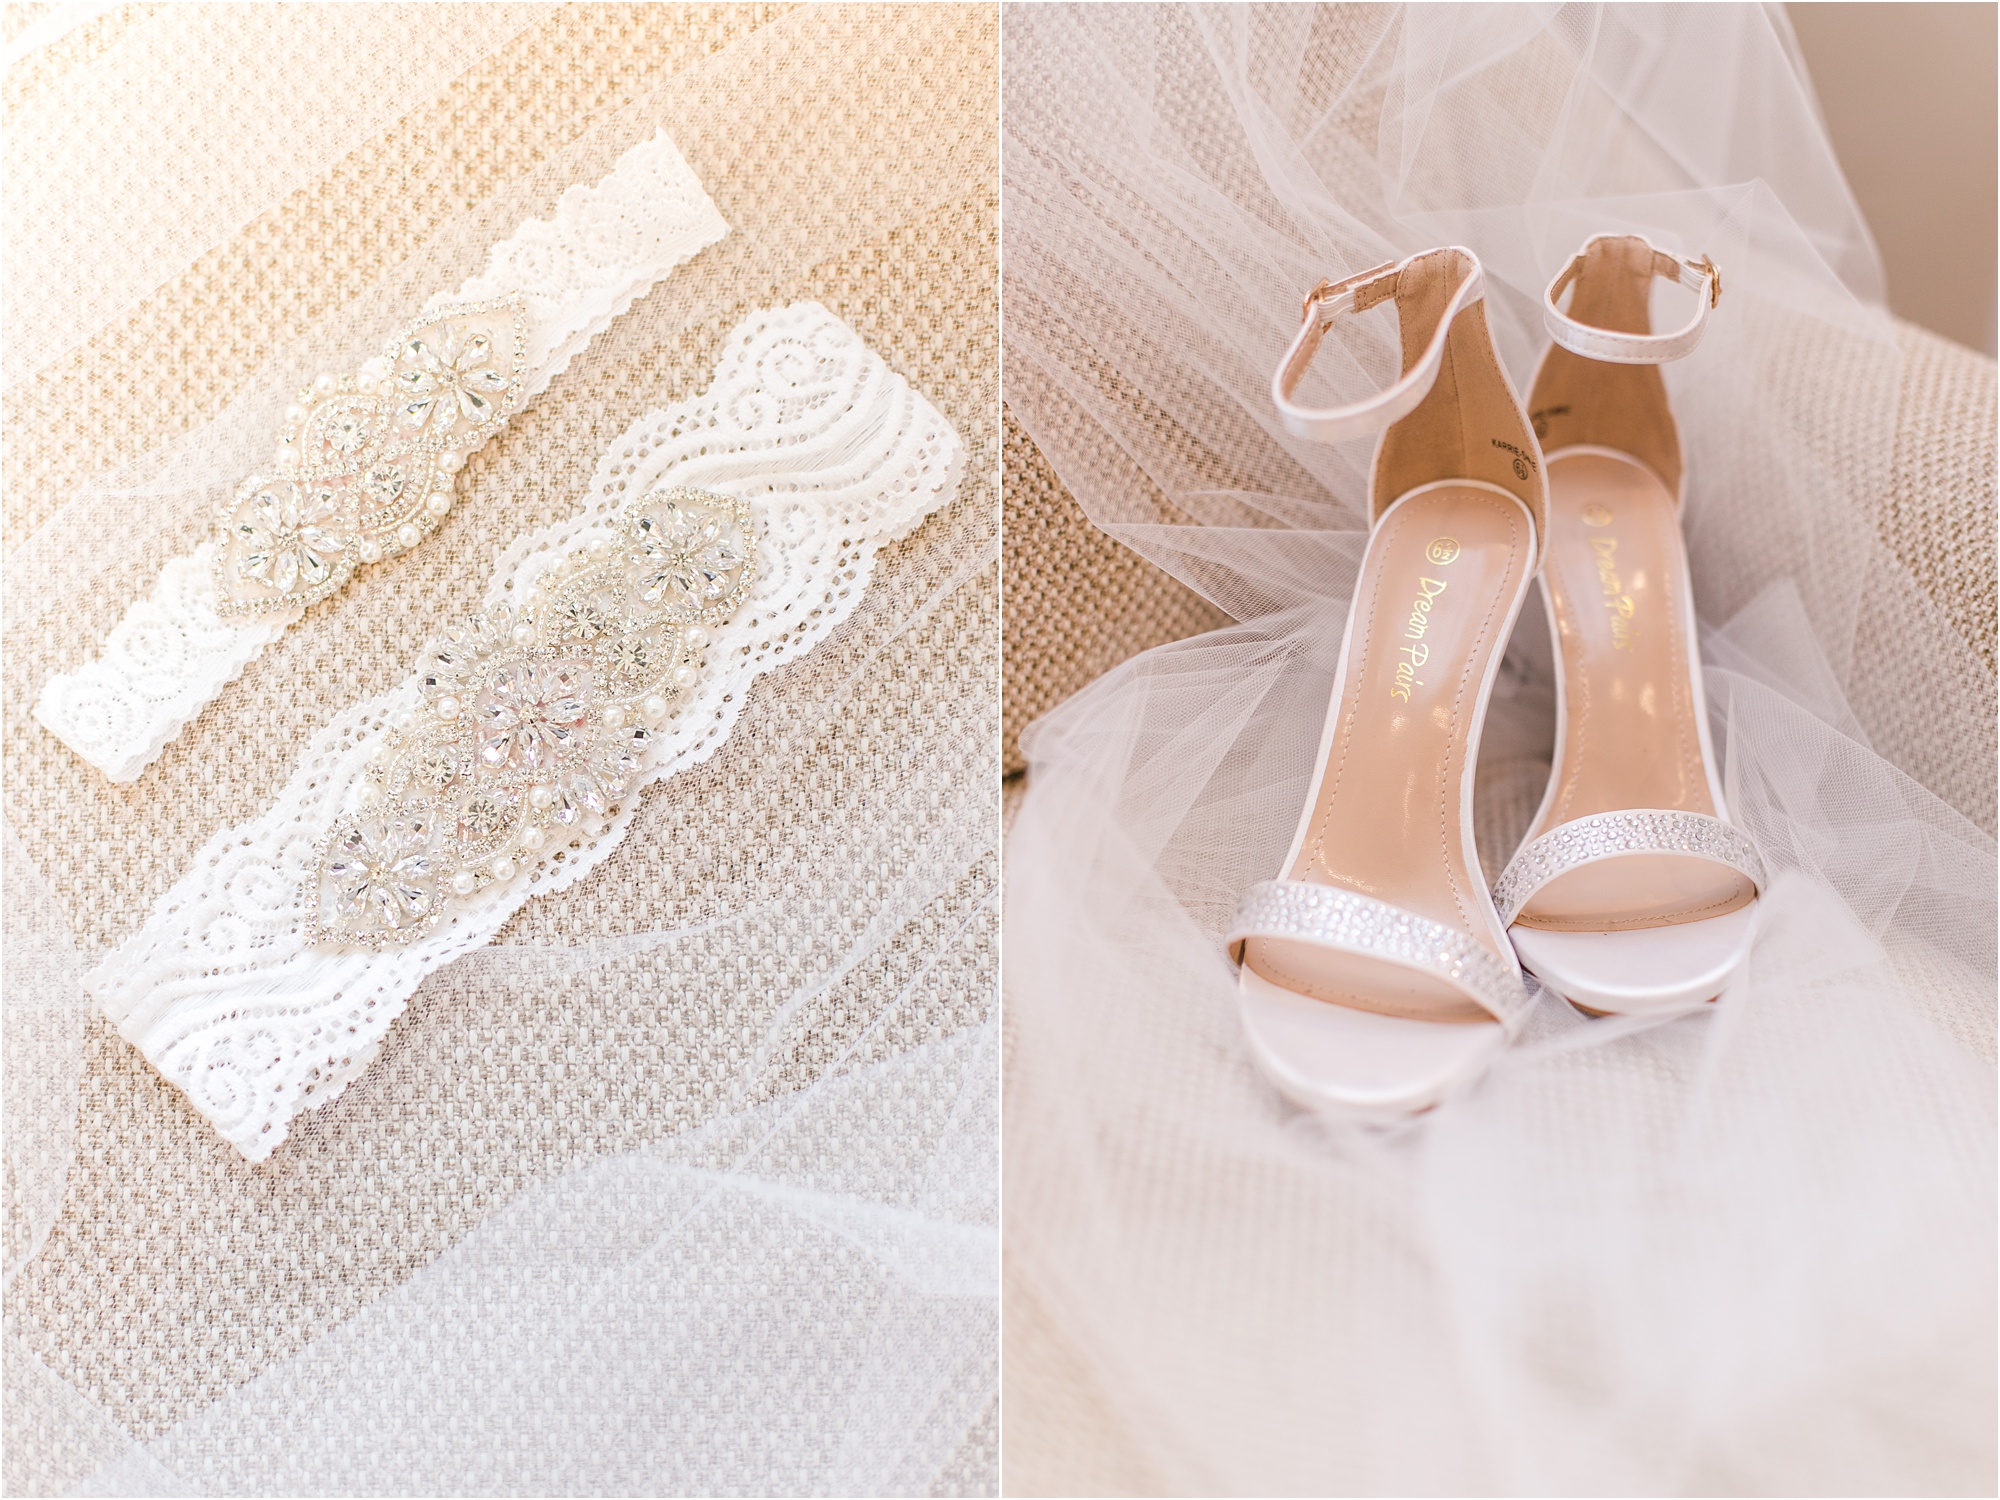 rock barn canton ga macon ga wedding photographer details wedding shoes garter